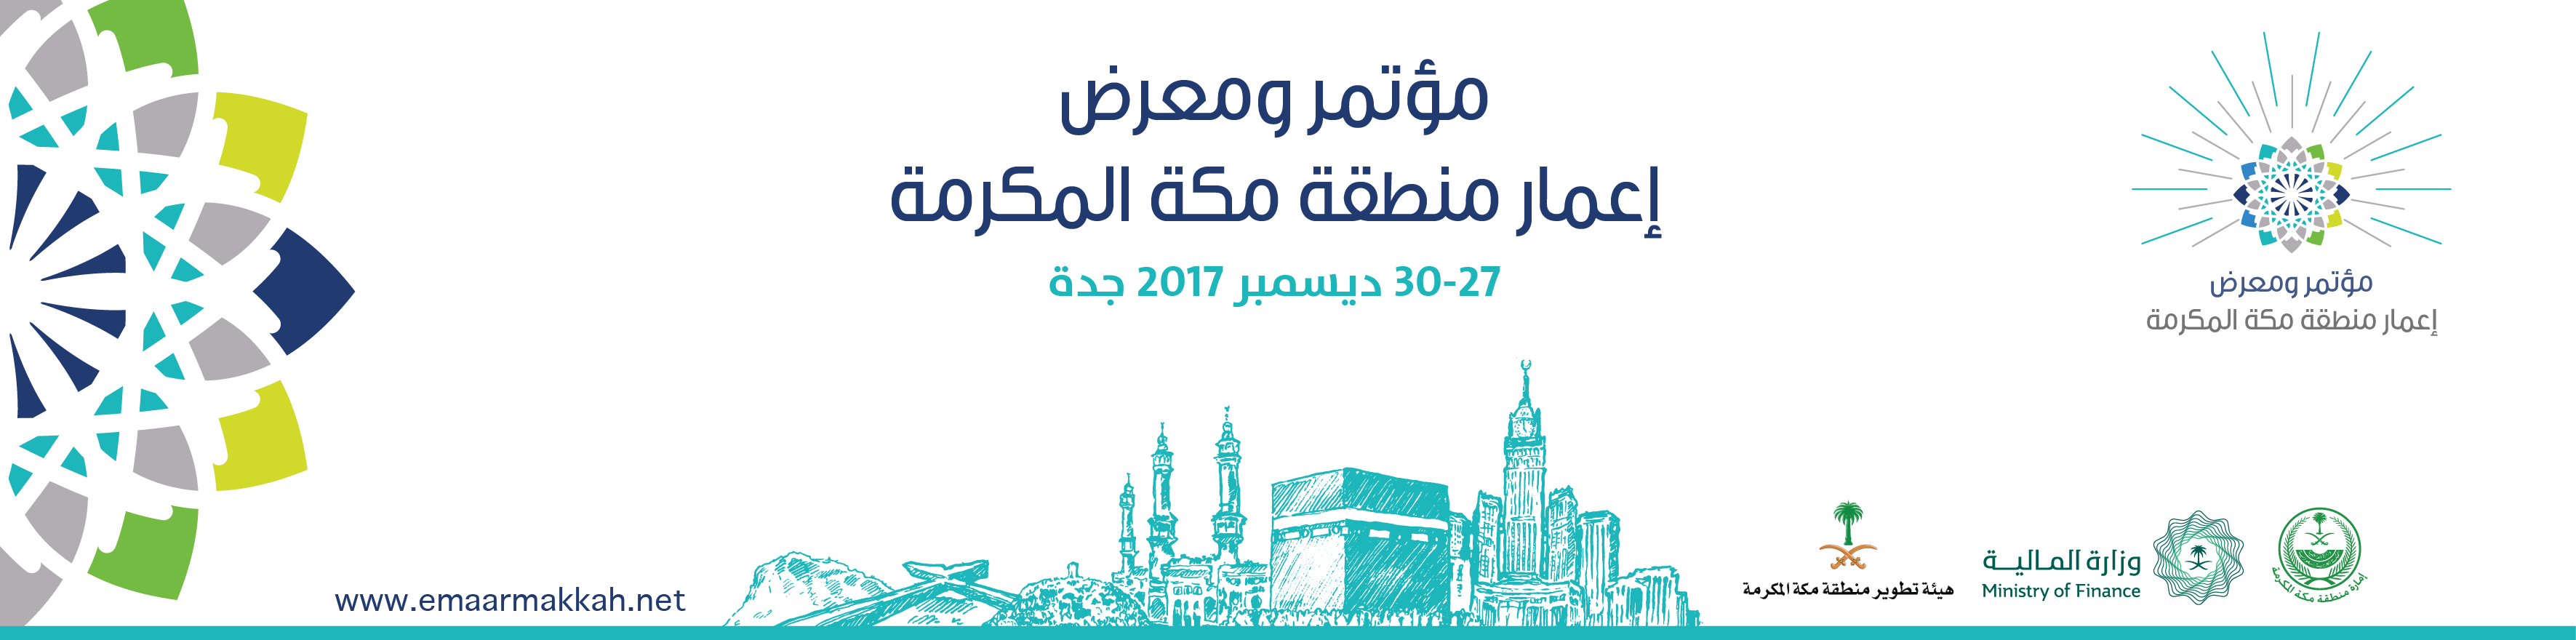 مشاركة المرصد الحضري ضمن جناح أمانة العاصمة المقدسة في مؤتمر ومعرض إعمار منطقة مكة المكرمة